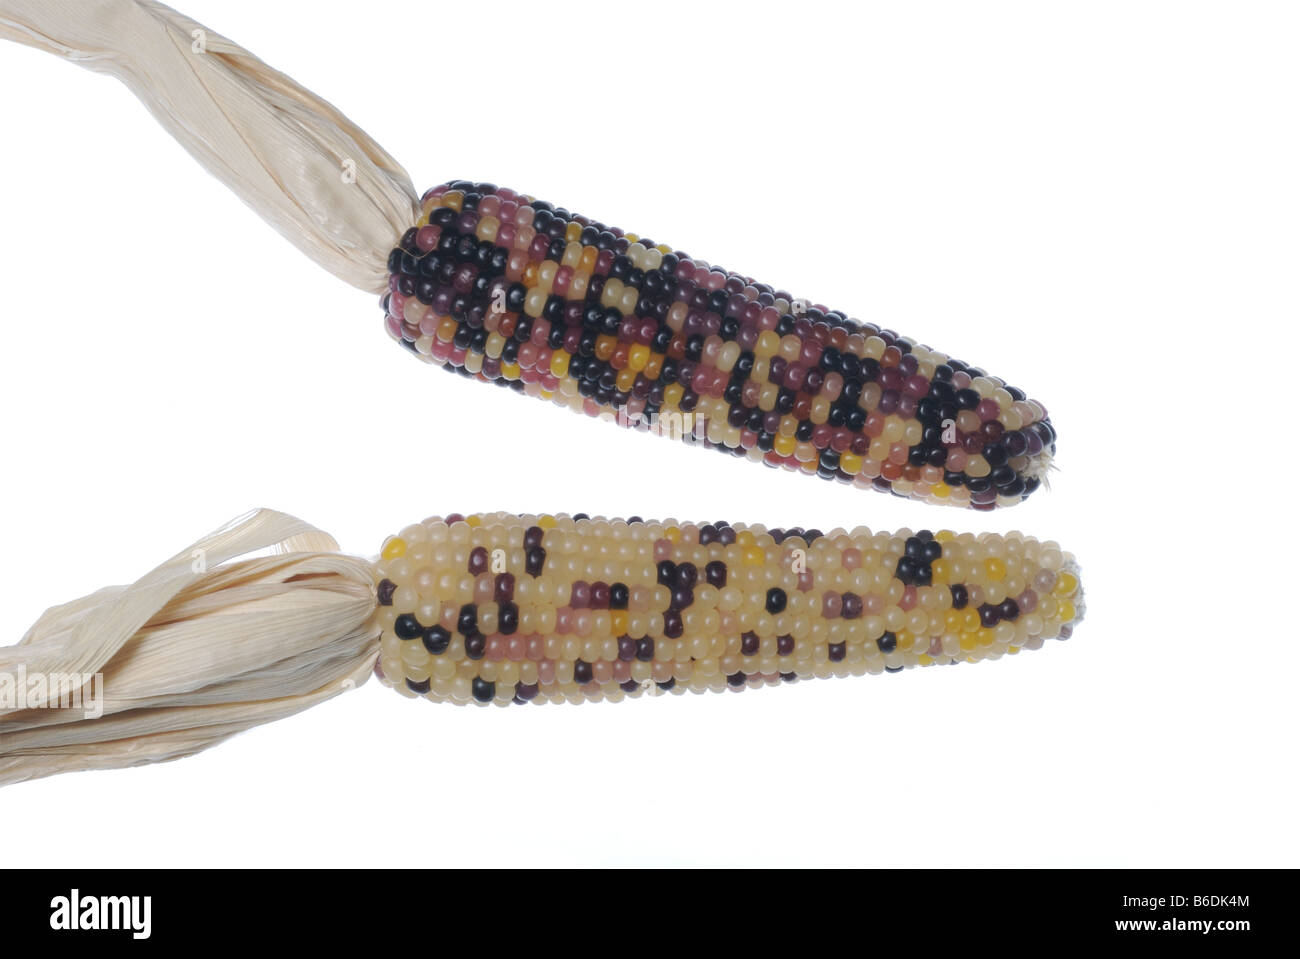 Multicolored corn ears. Stock Photo